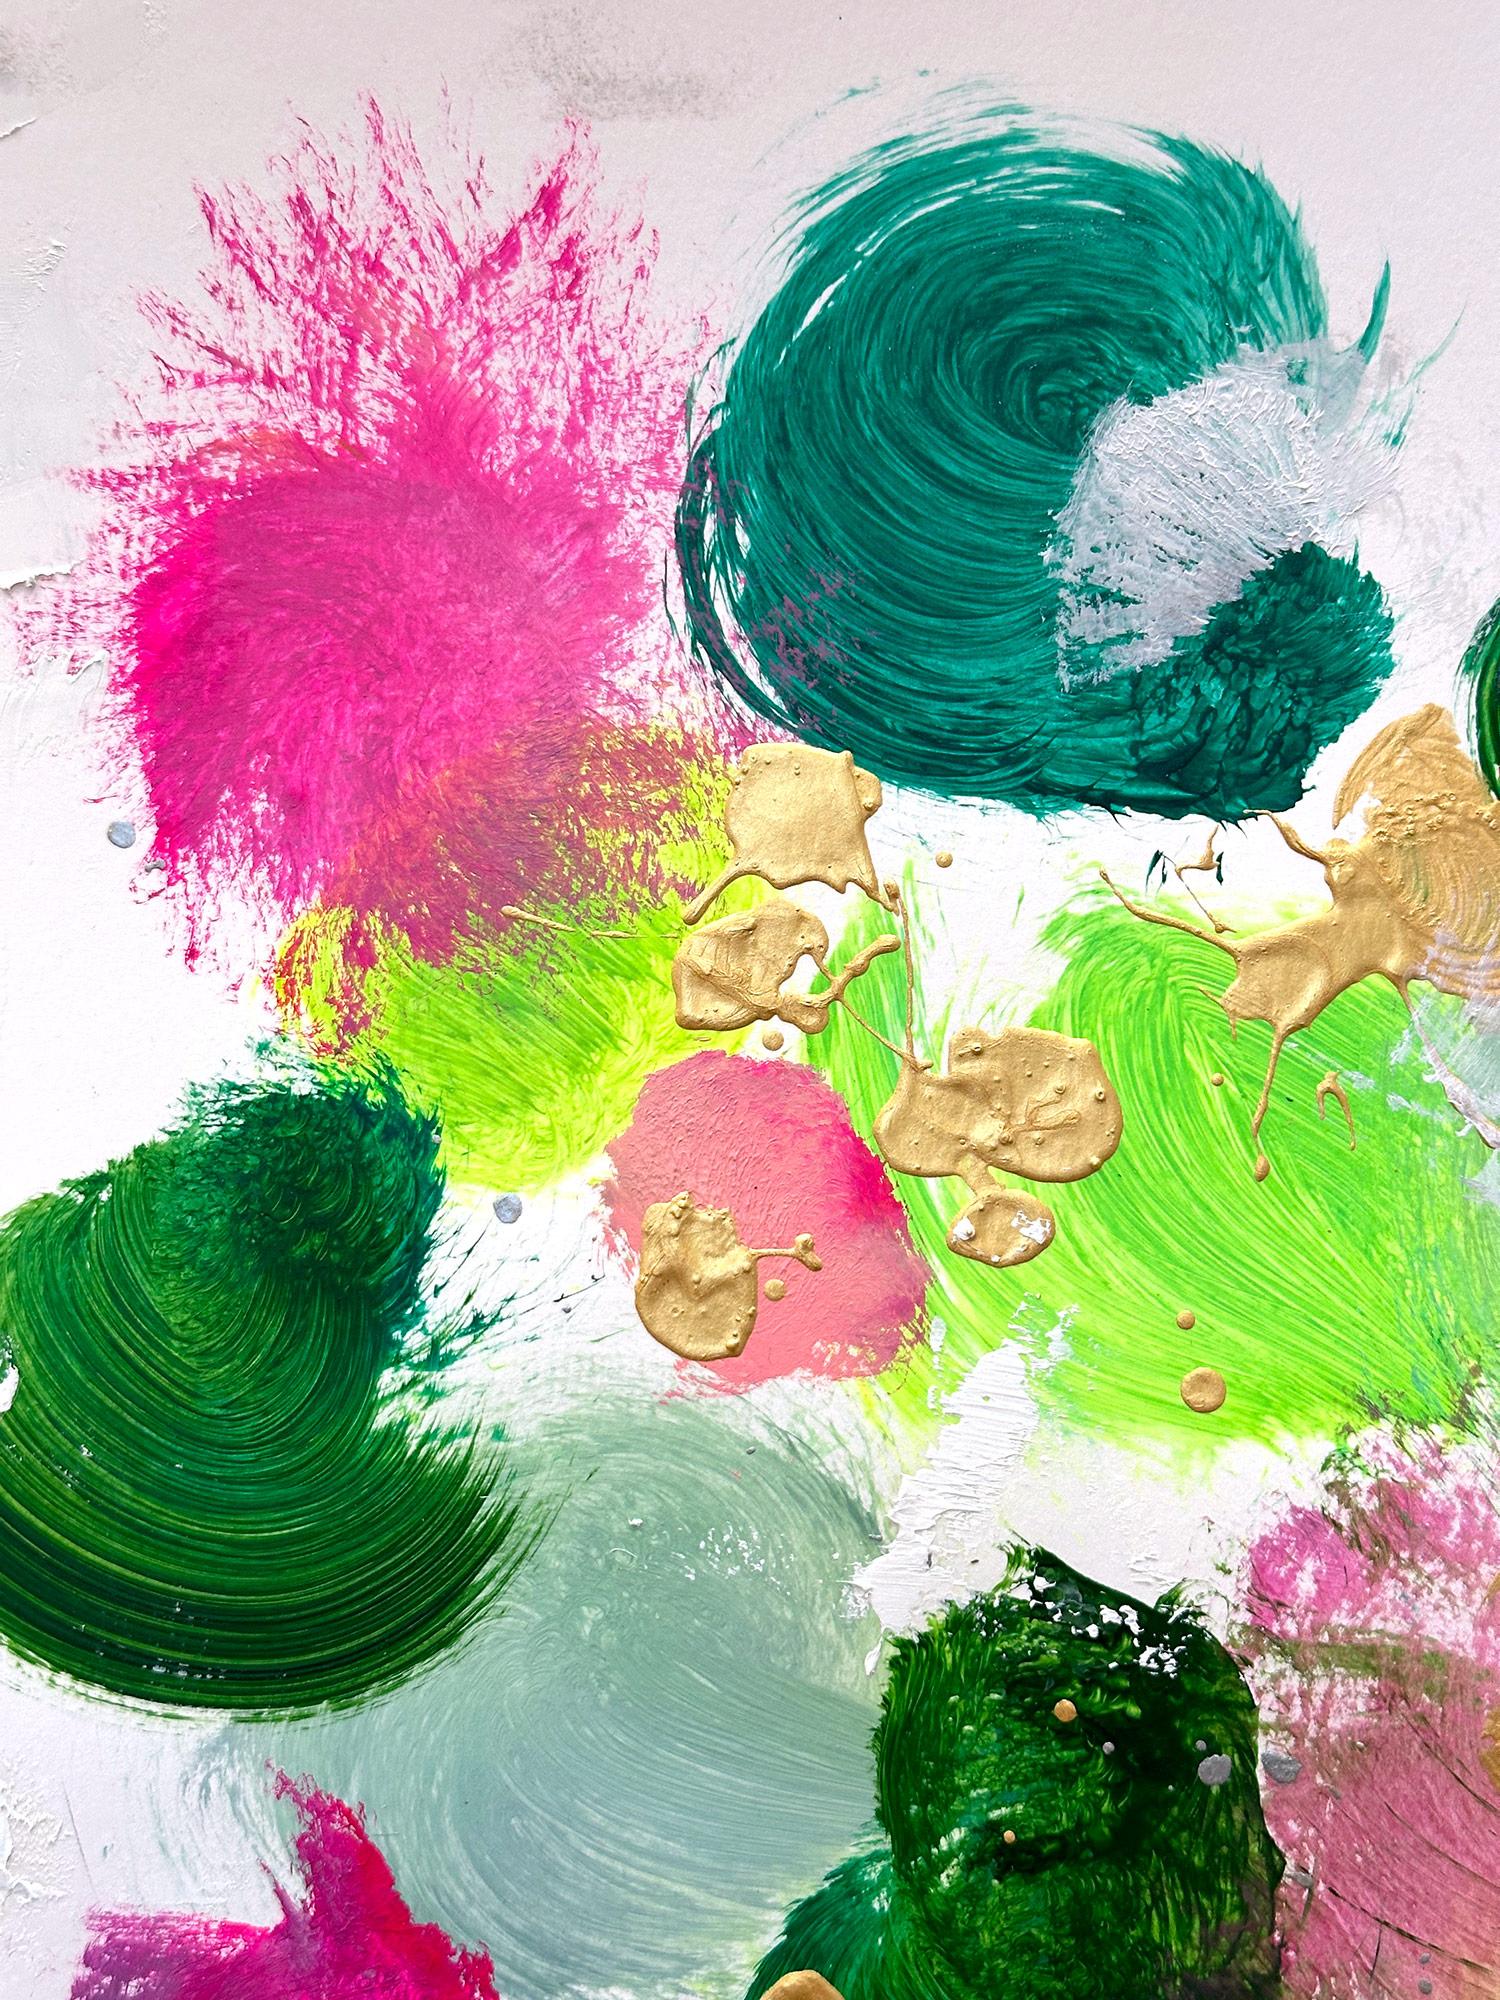 Ein Werk in Acryl und Öl auf schwerem Papier mit leuchtenden Farben und Texturen. Wir konzentrieren uns auf die Einfachheit der Schönheit des Augenblicks, während Shaoul eine durchscheinende, aber sehr farbenfrohe Palette mit dickem Farbauftrag,